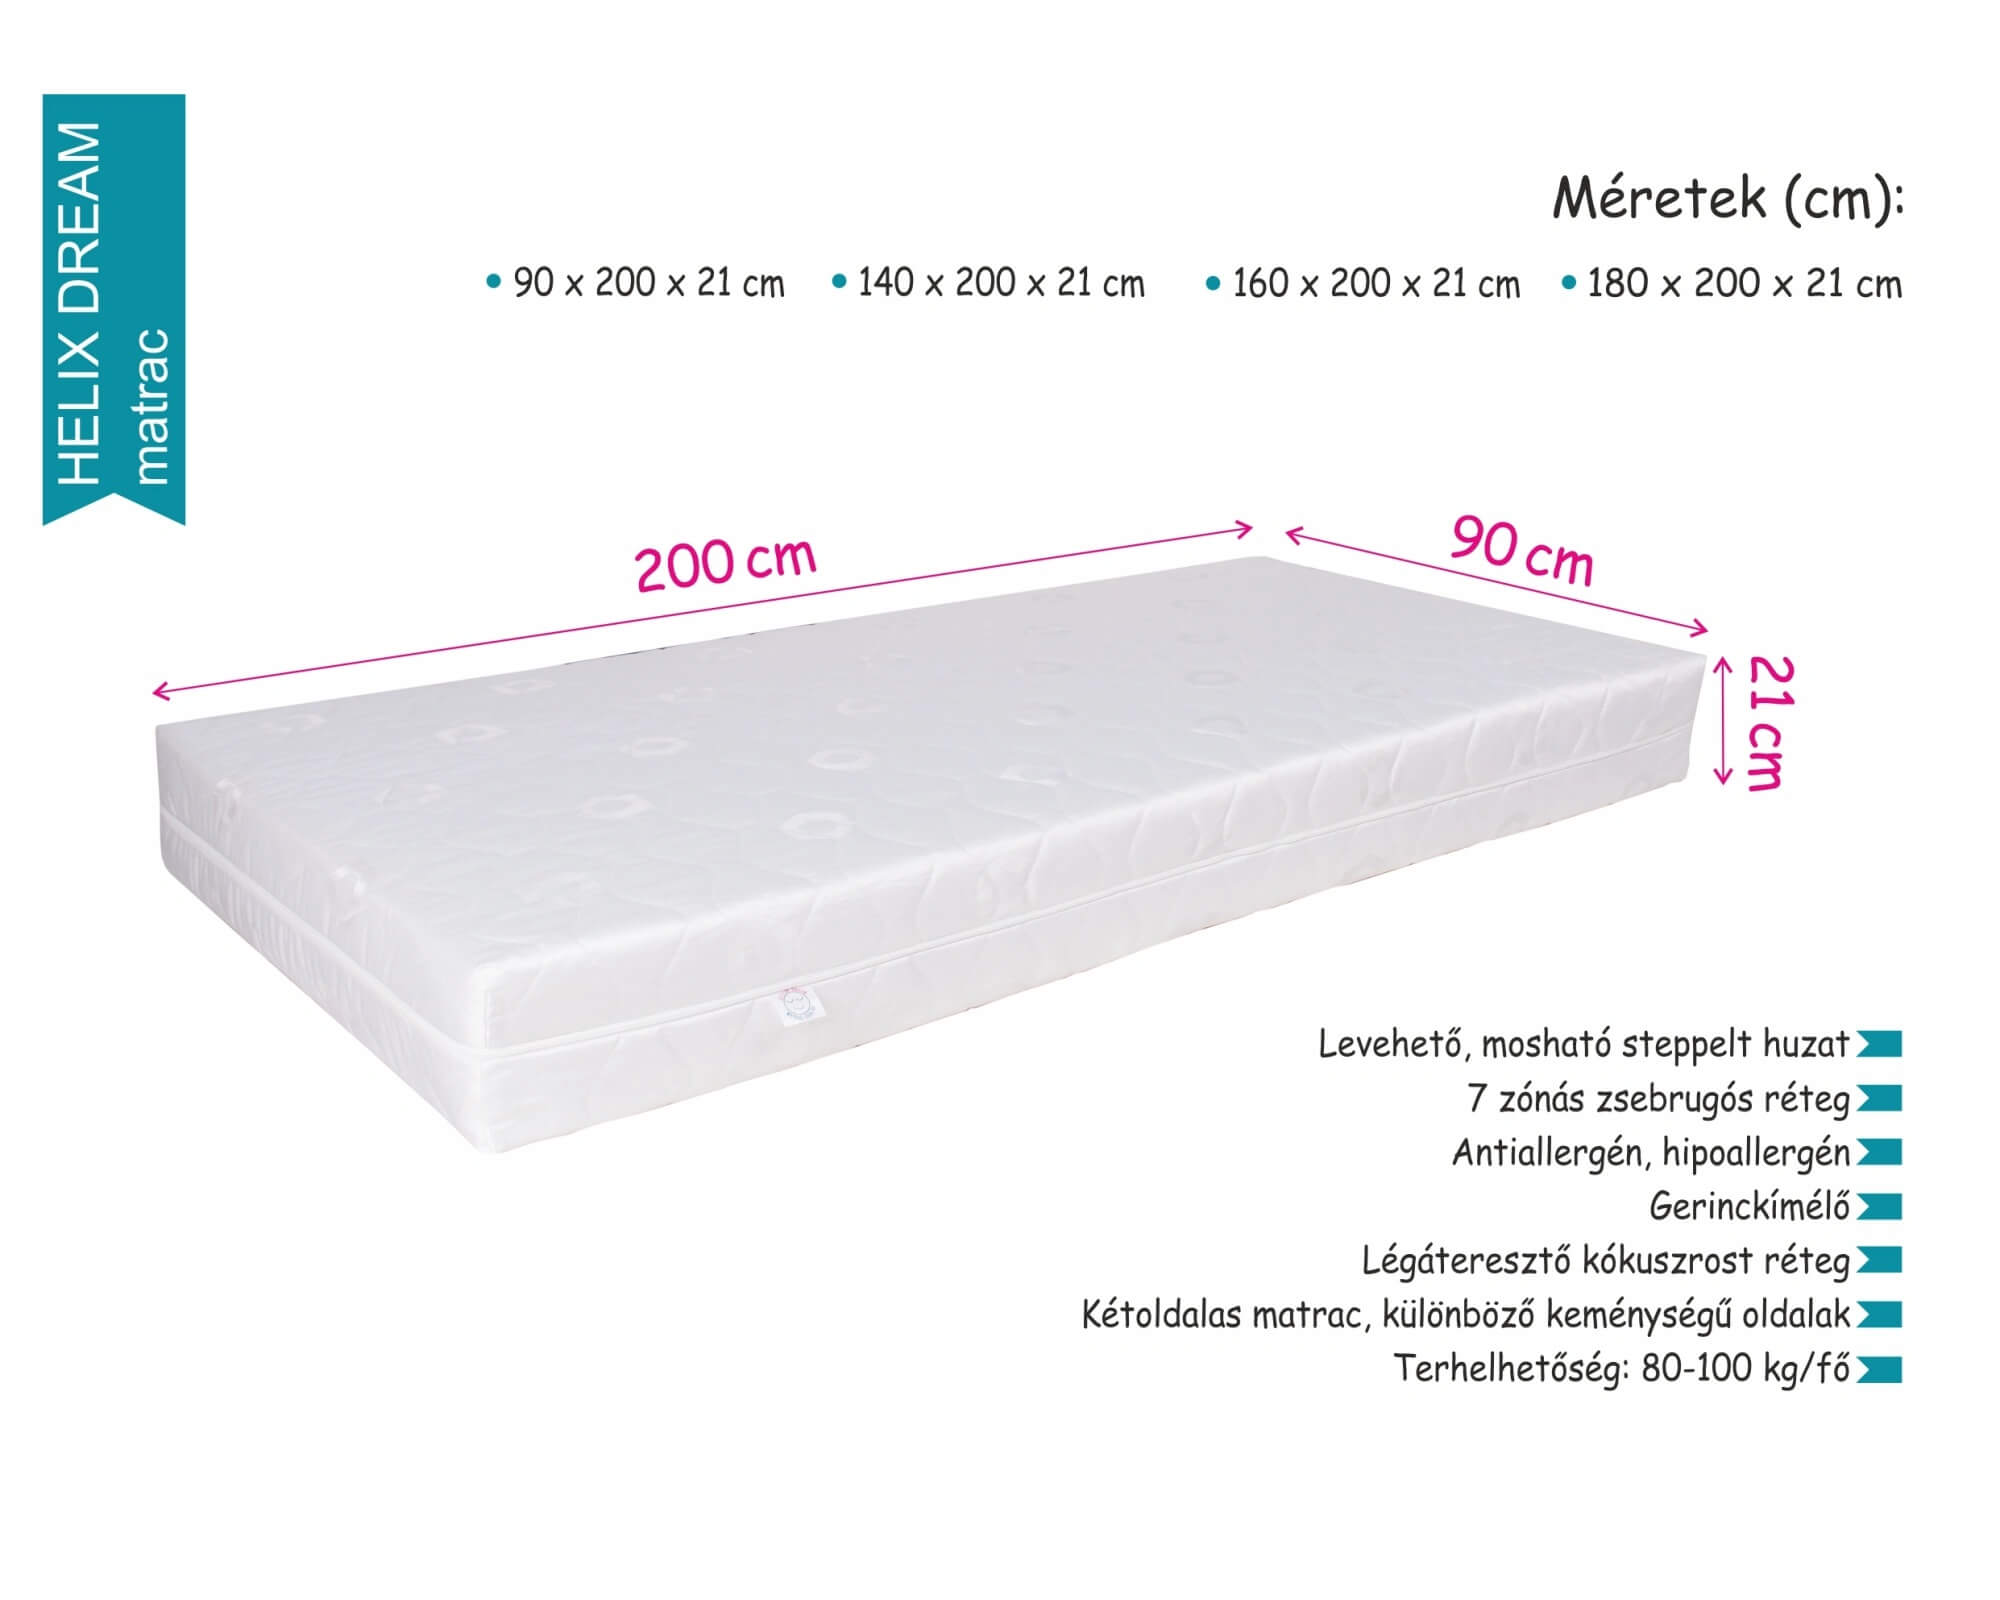 Helix dream matrac | táskarugós - Kókuszrost réteggel | 160x200x21 cm